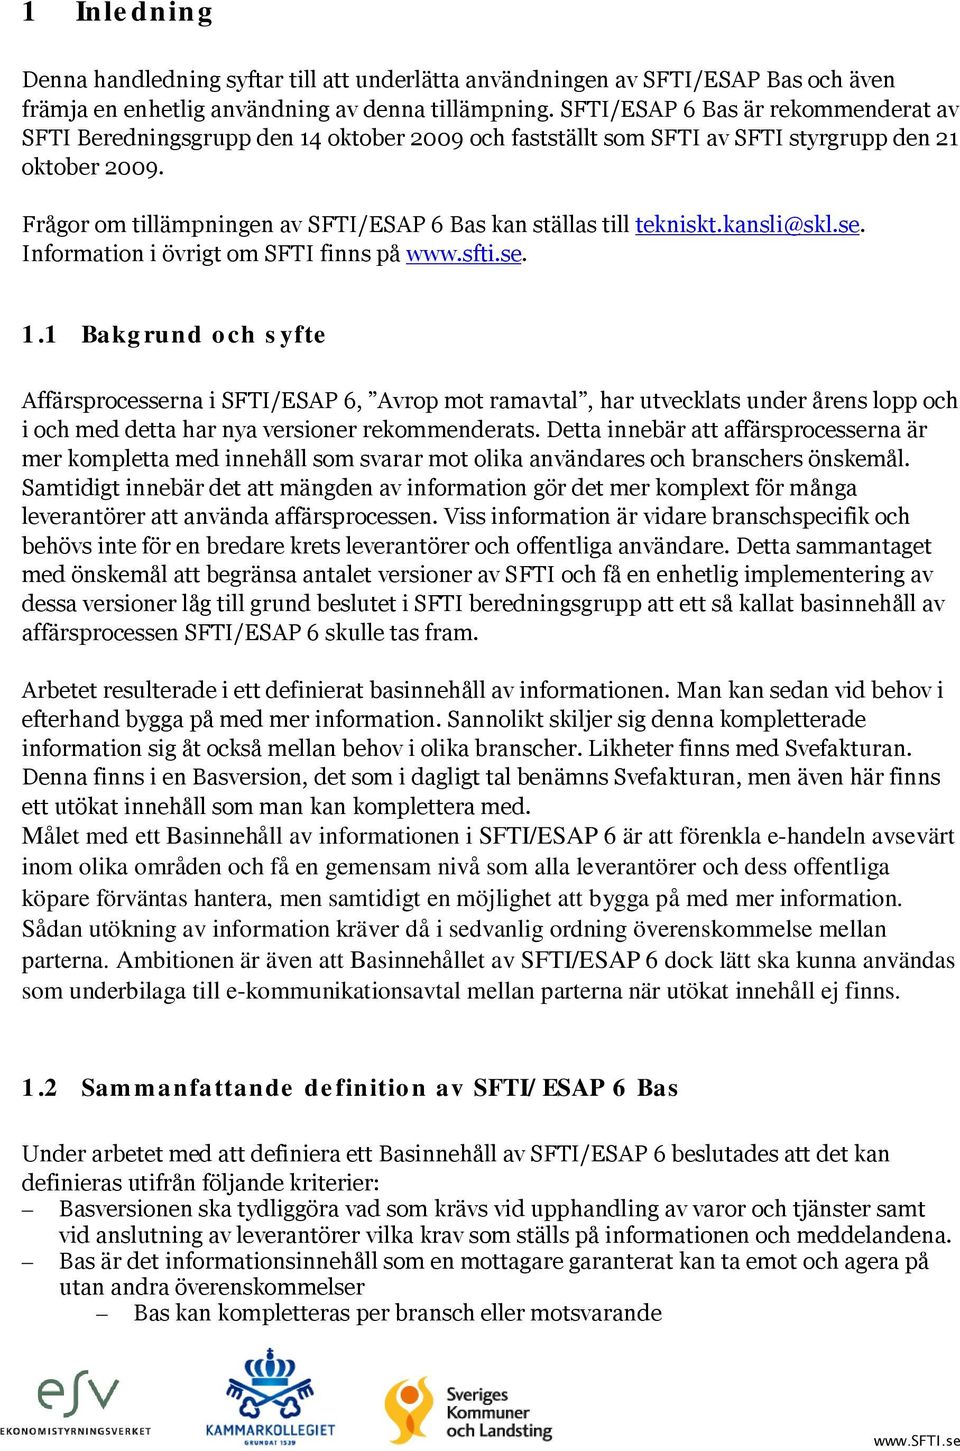 Frågor om tillämpningen av SFTI/ESAP 6 Bas kan ställas till tekniskt.kansli@skl.se. Information i övrigt om SFTI finns på www.sfti.se. 1.